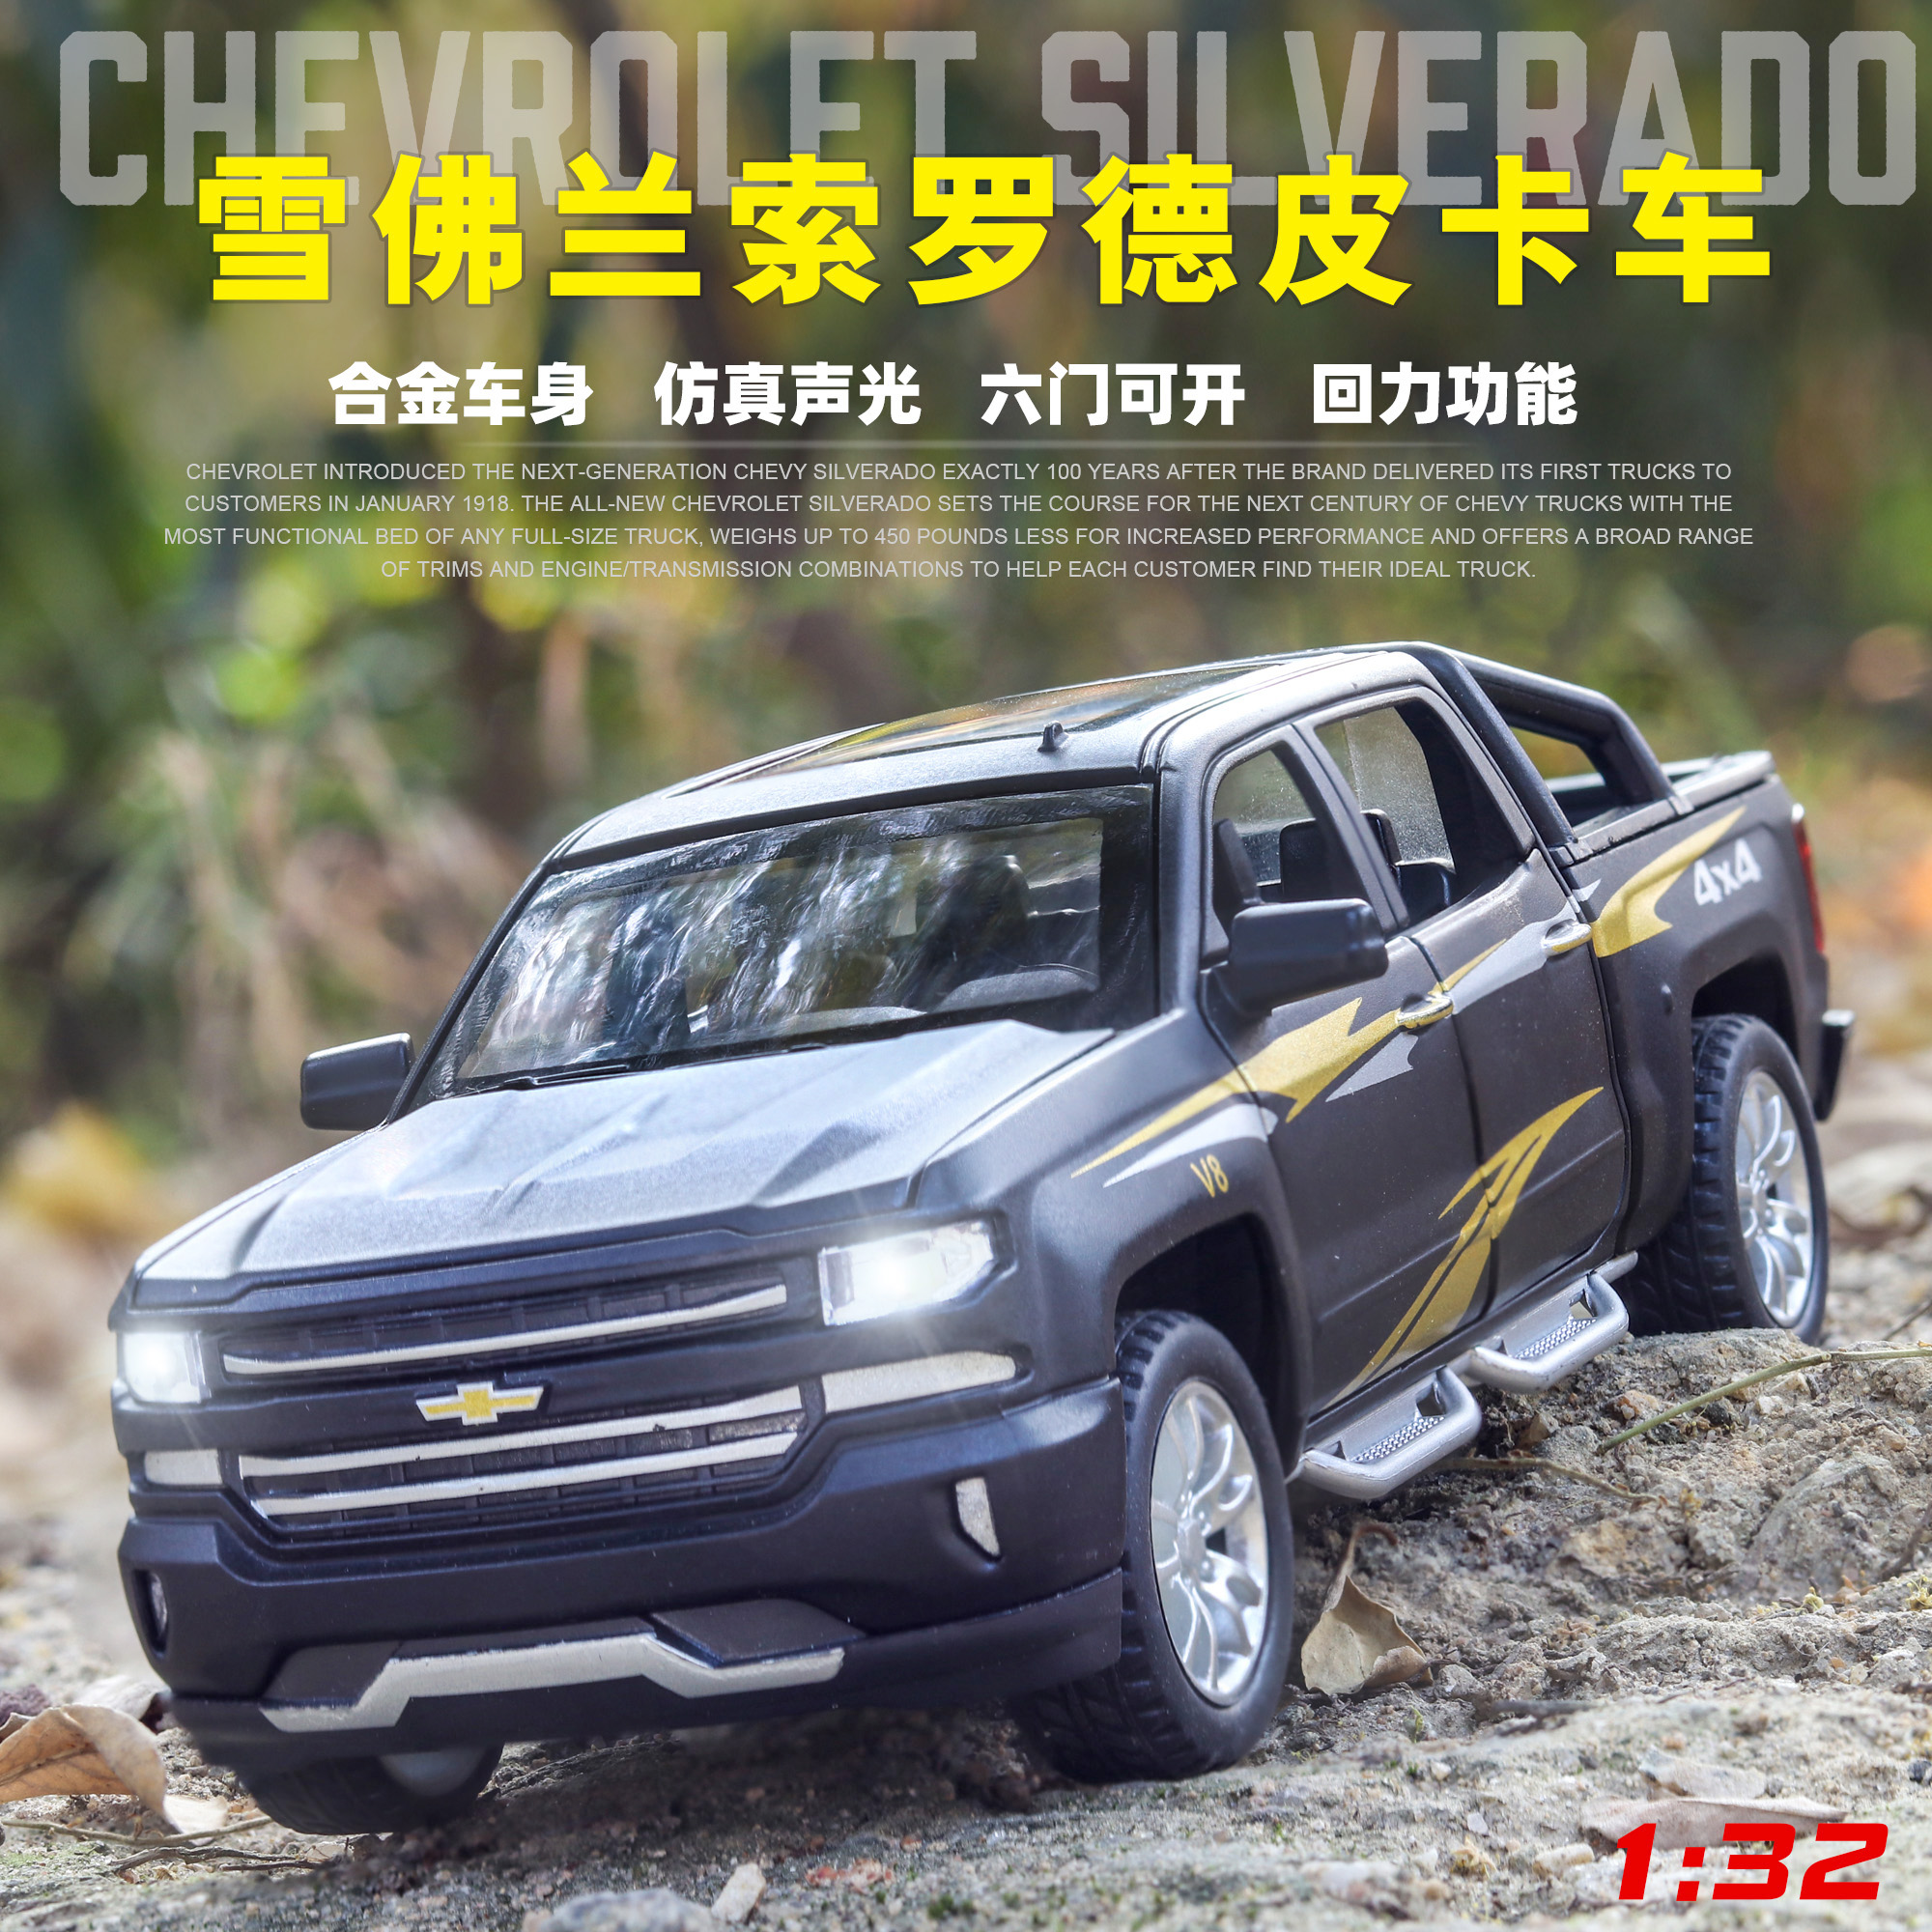 박스형 시뮬레이션 합금 Chevrolet Silverado 픽업 트럭 소리와 빛 풀 백 도어 금속 어린이 장난감 자동차 모델